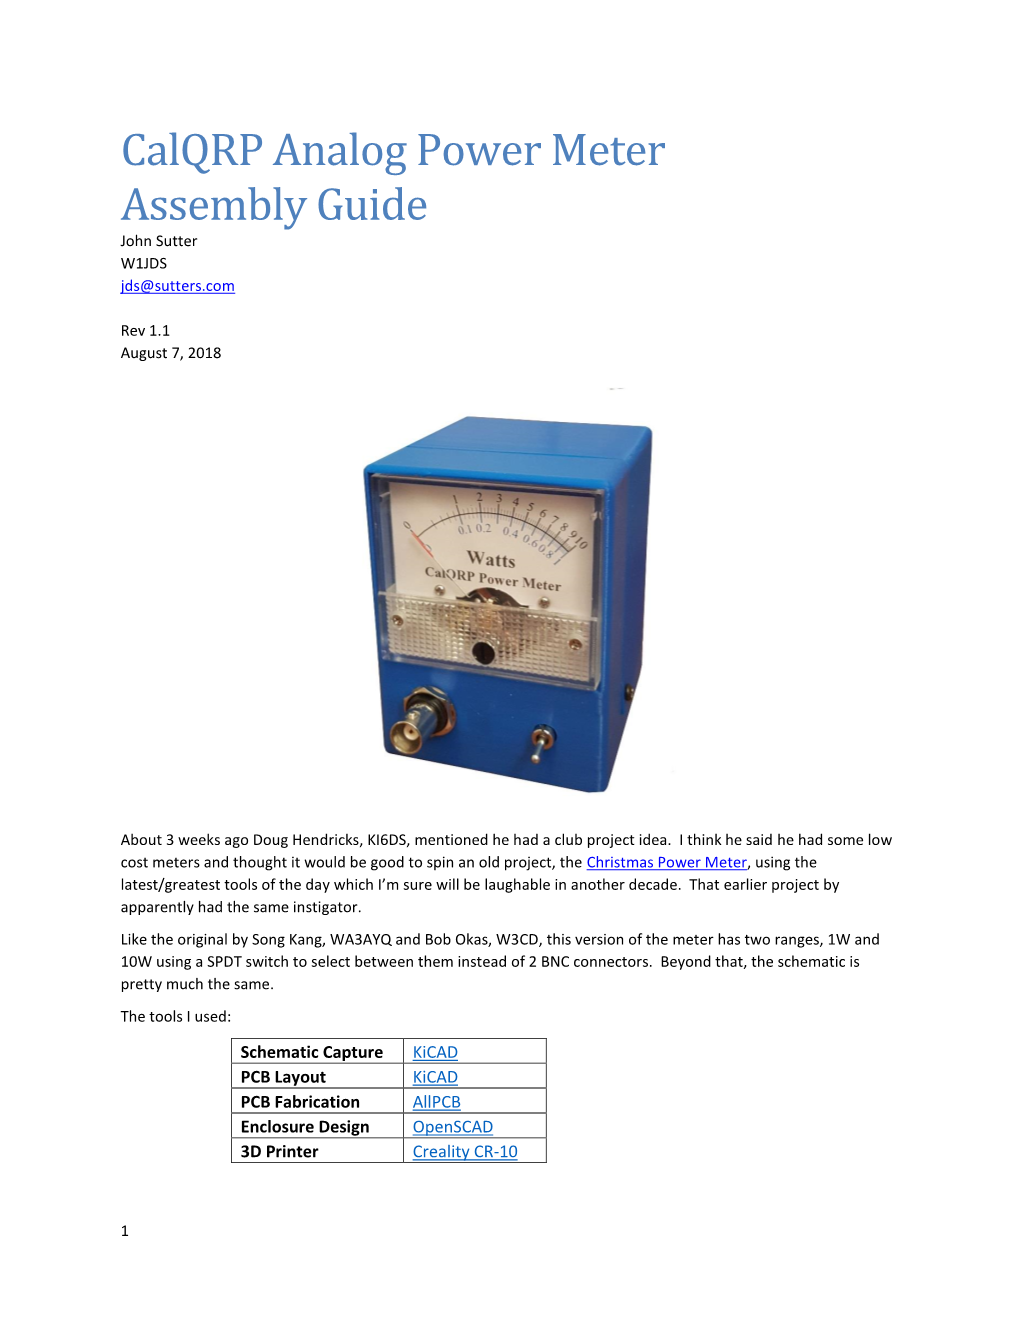 Calqrp Analog Power Meter Assembly Guide John Sutter W1JDS Jds@Sutters.Com